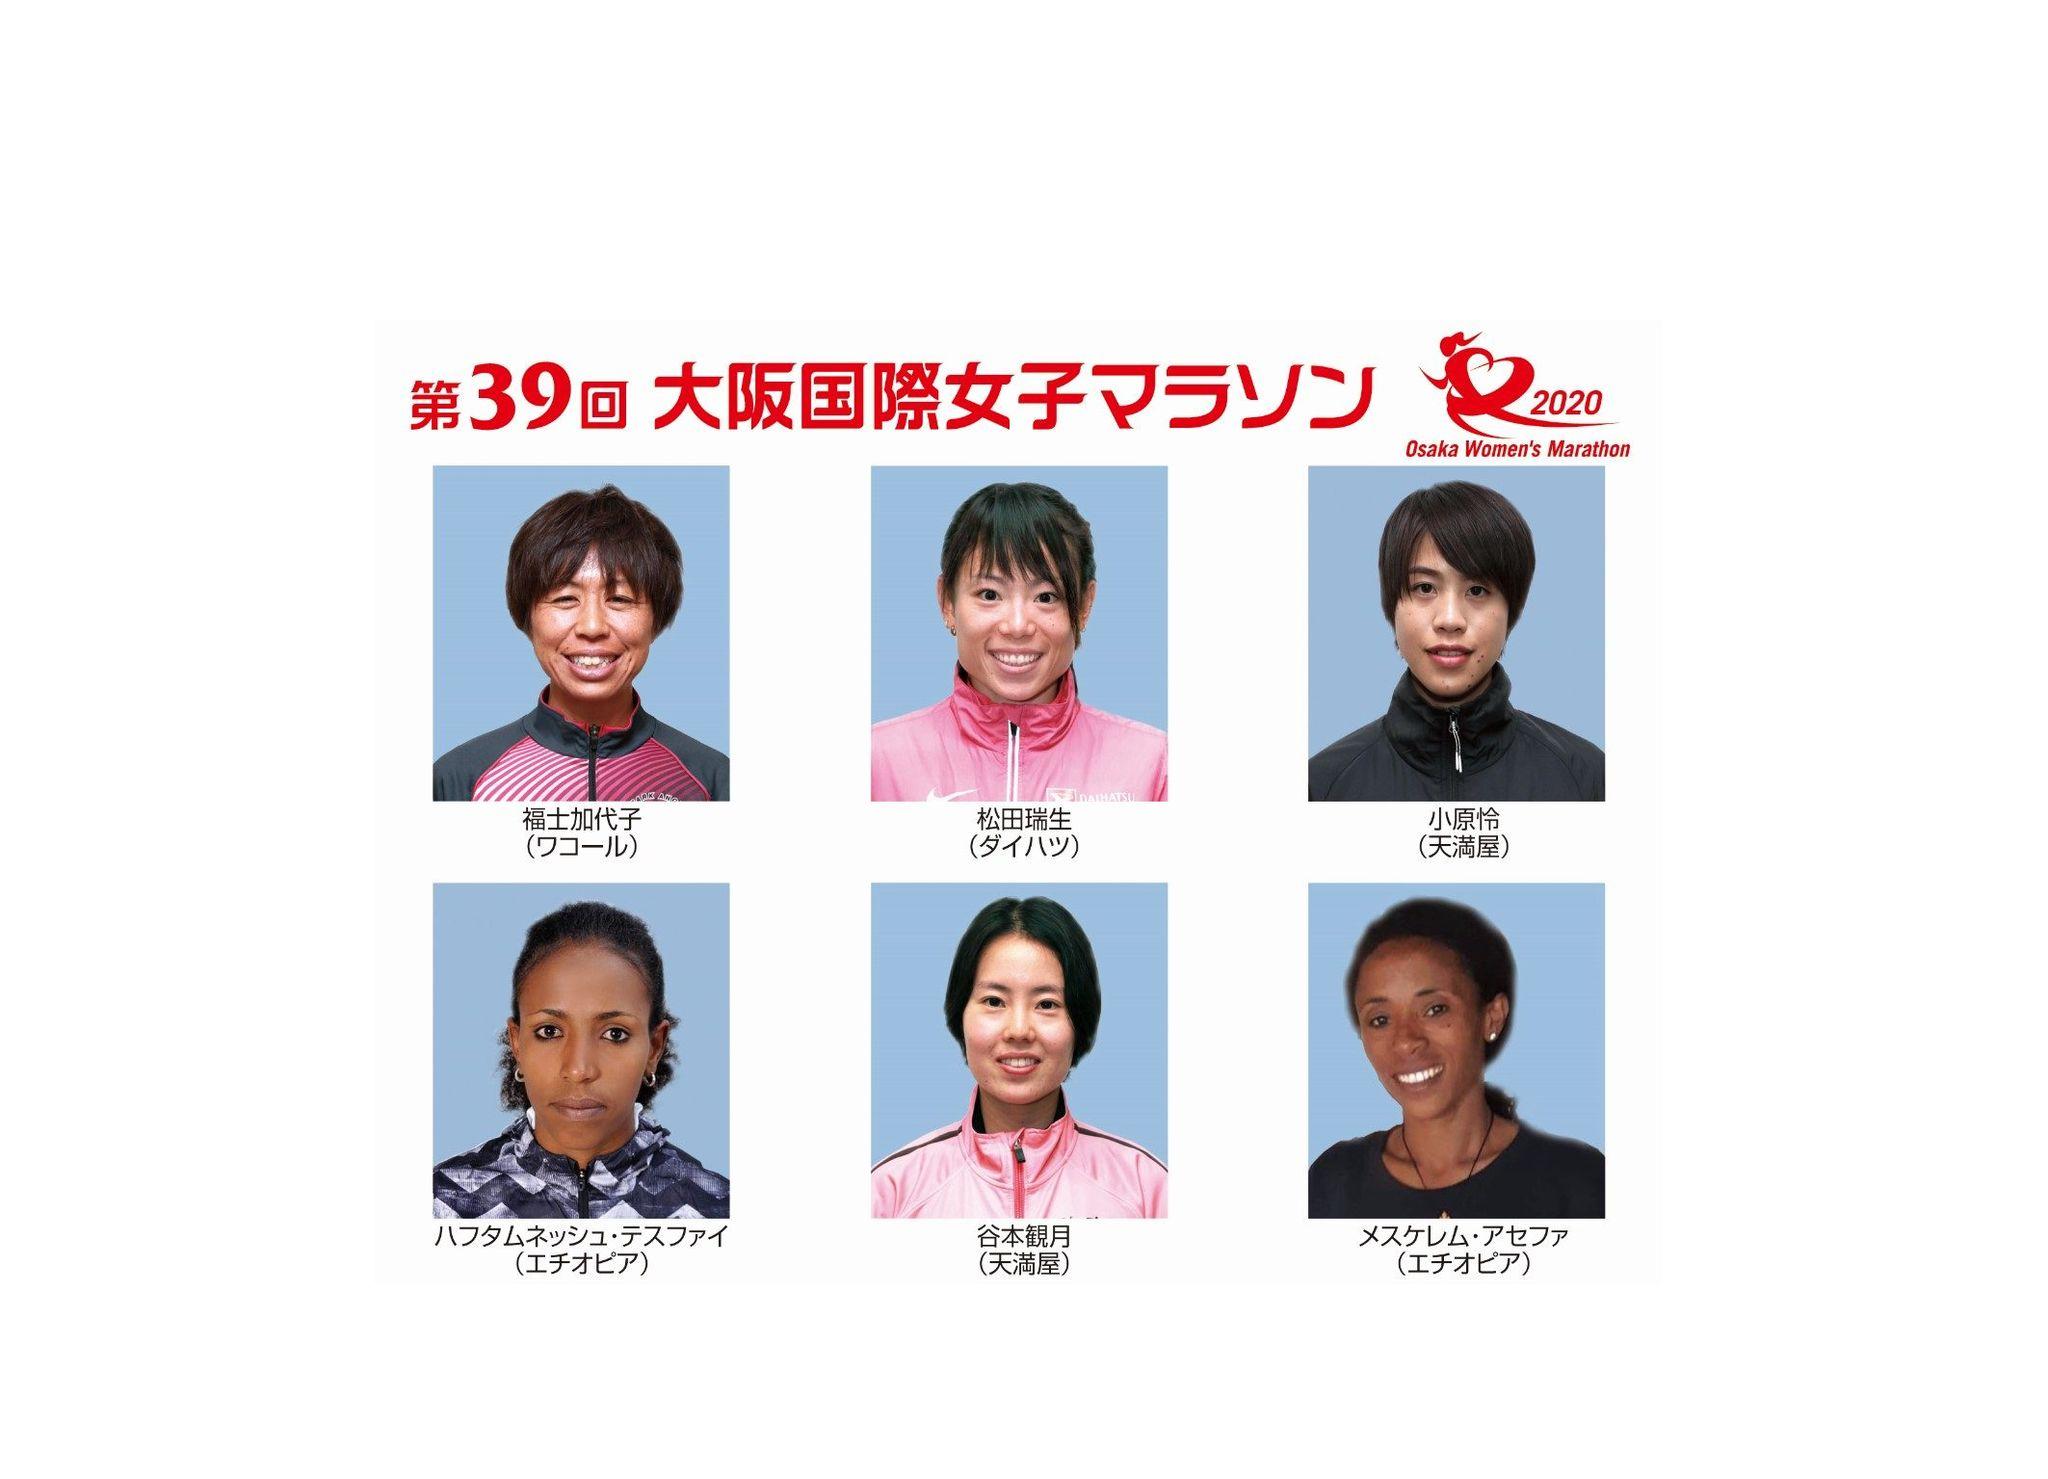 東京五輪代表選考会『 大阪国際女子マラソン』に福士、松田、小原らが出場を表明_site_large